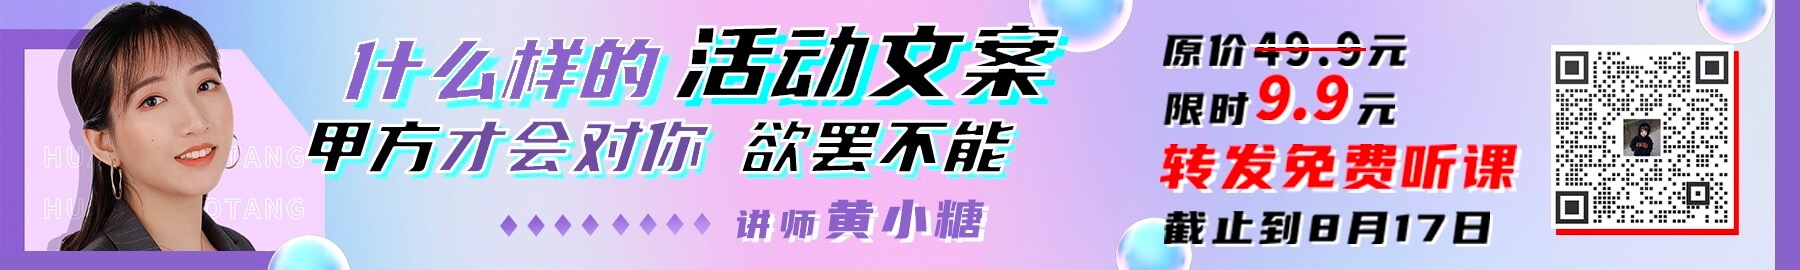 培训列表banner-活动版.jpg